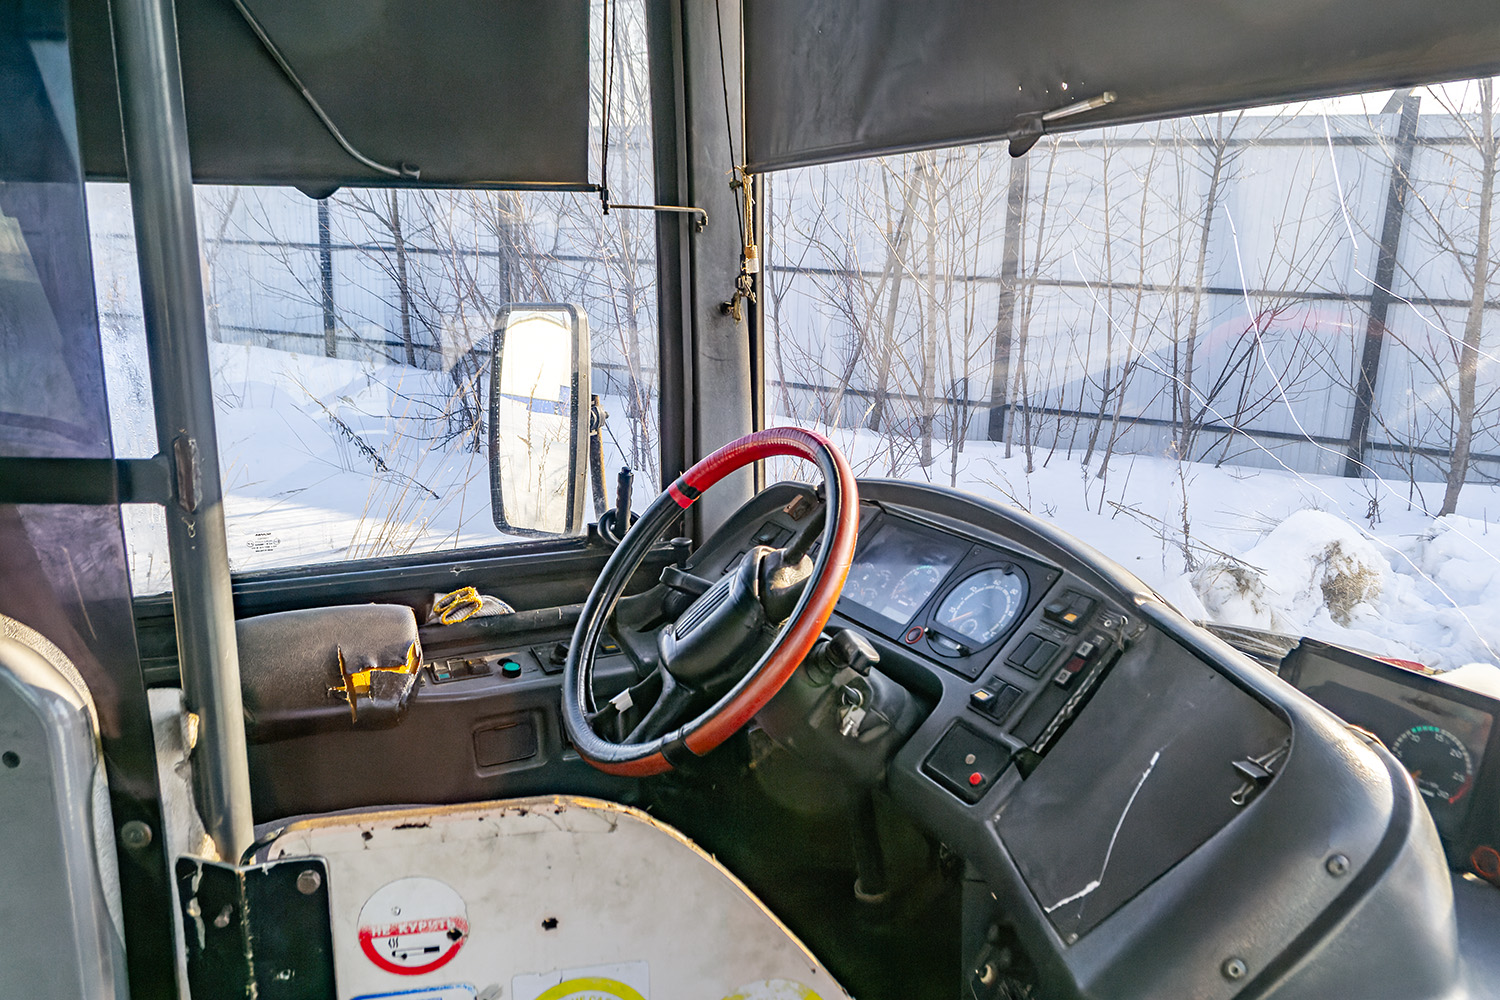 Penza, Scania OmniLink CL94UB 4X2LB # Р 235 УЕ 33